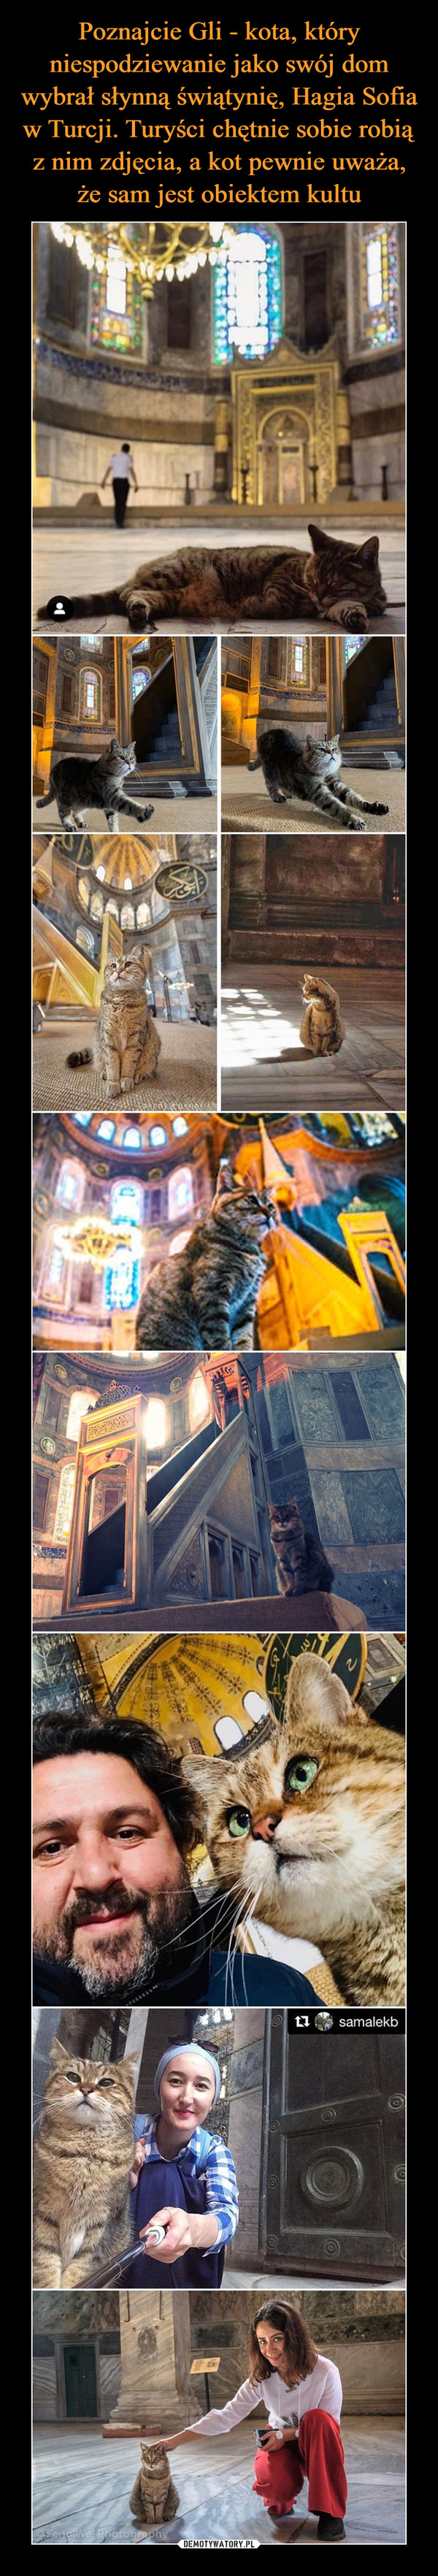 Poznajcie Gli - kota, który niespodziewanie jako swój dom wybrał słynną świątynię, Hagia Sofia w Turcji. Turyści chętnie sobie robią z nim zdjęcia, a kot pewnie uważa, że sam jest obiektem kultu